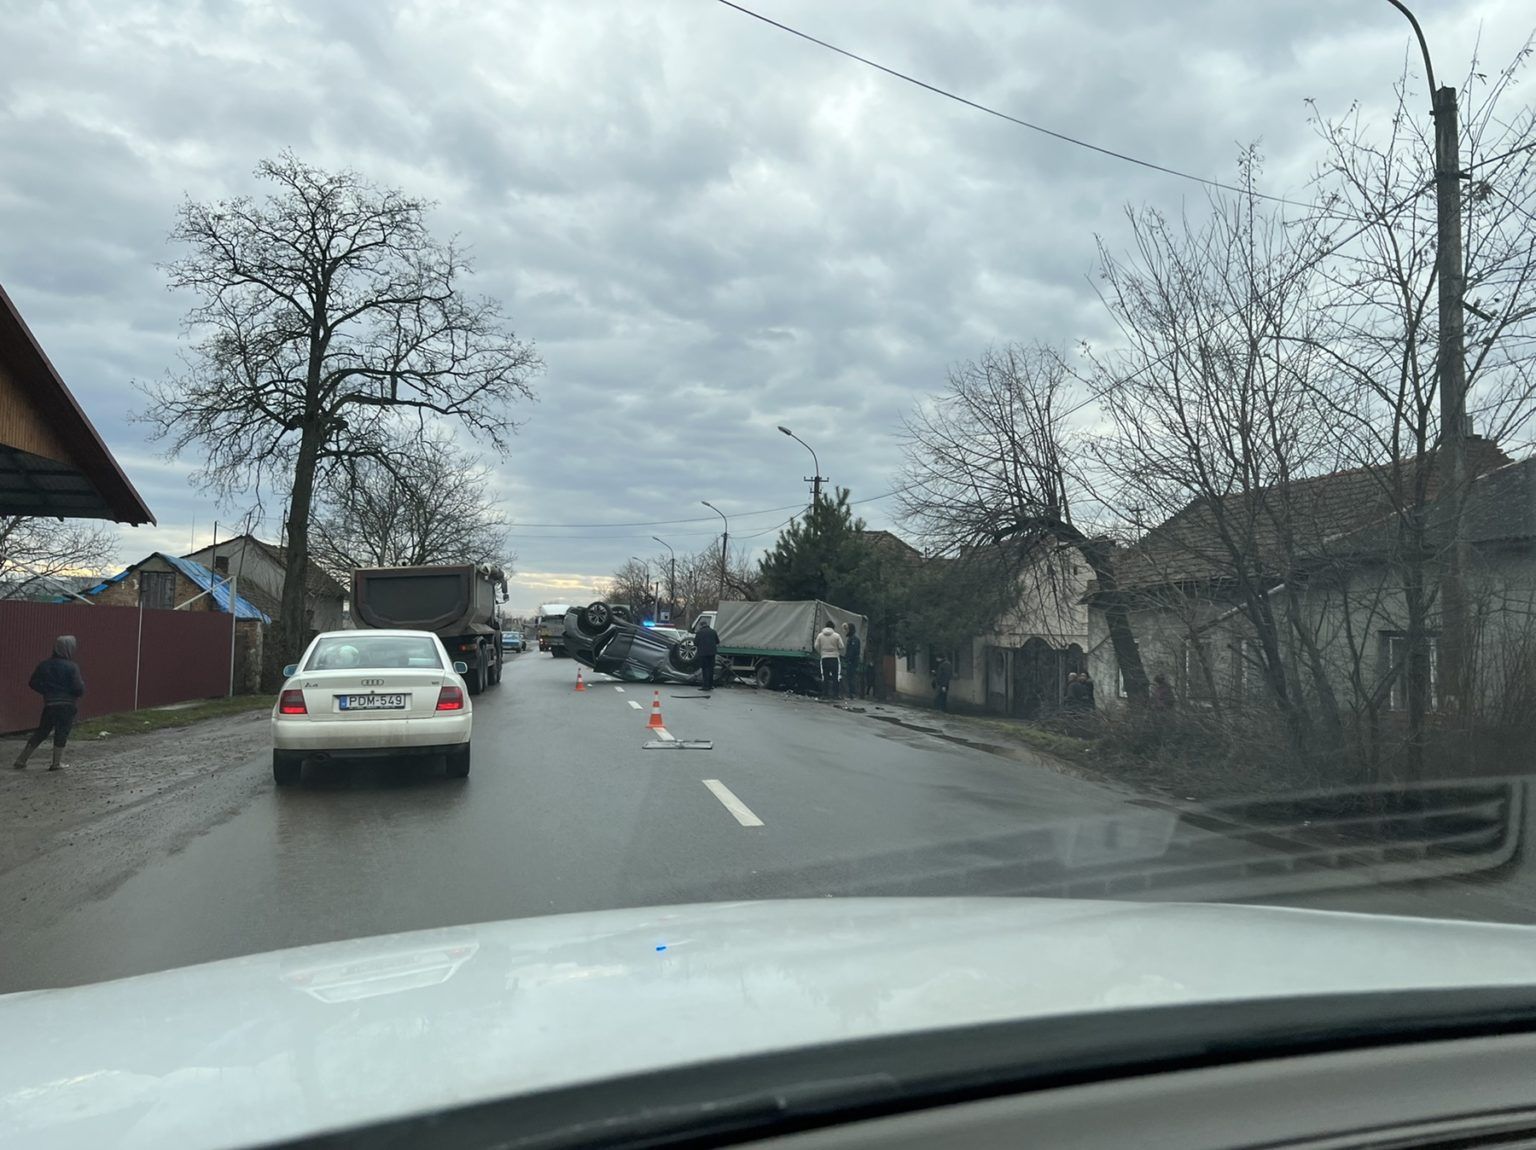 ДТП в Закарпатье: Перевернутый автомобиль заблокировал пол дороги